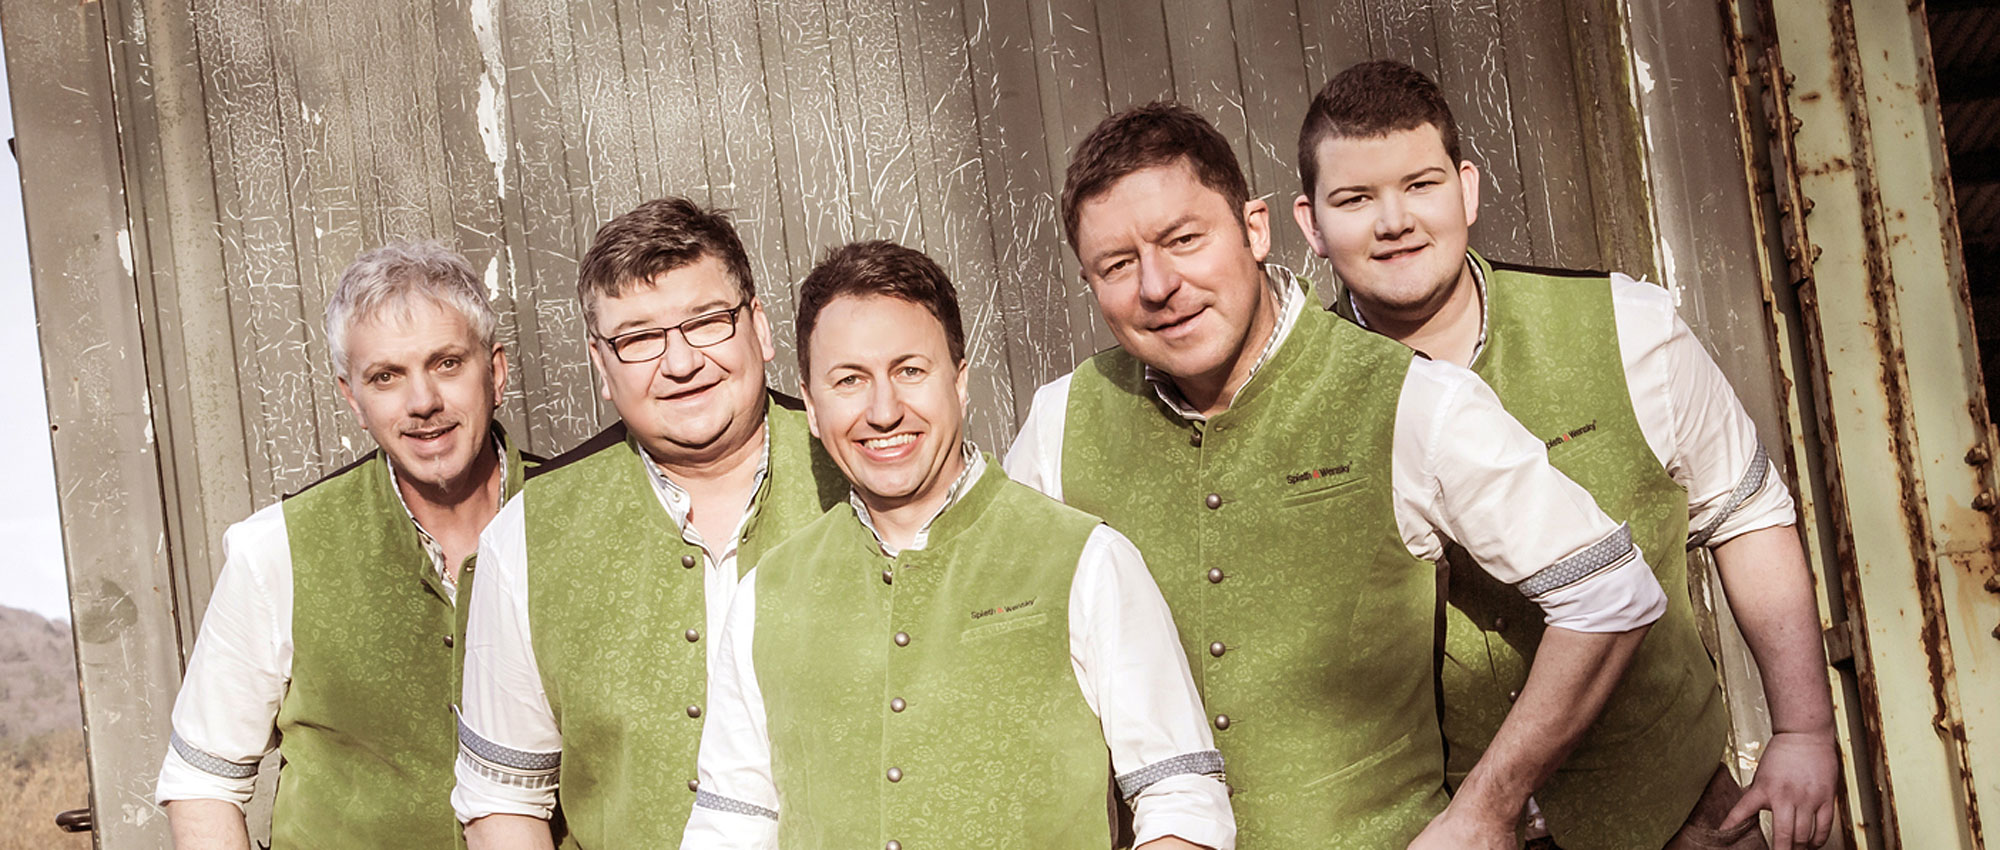 Fünf sympathische Musiker aus dem Bayerischen Wald